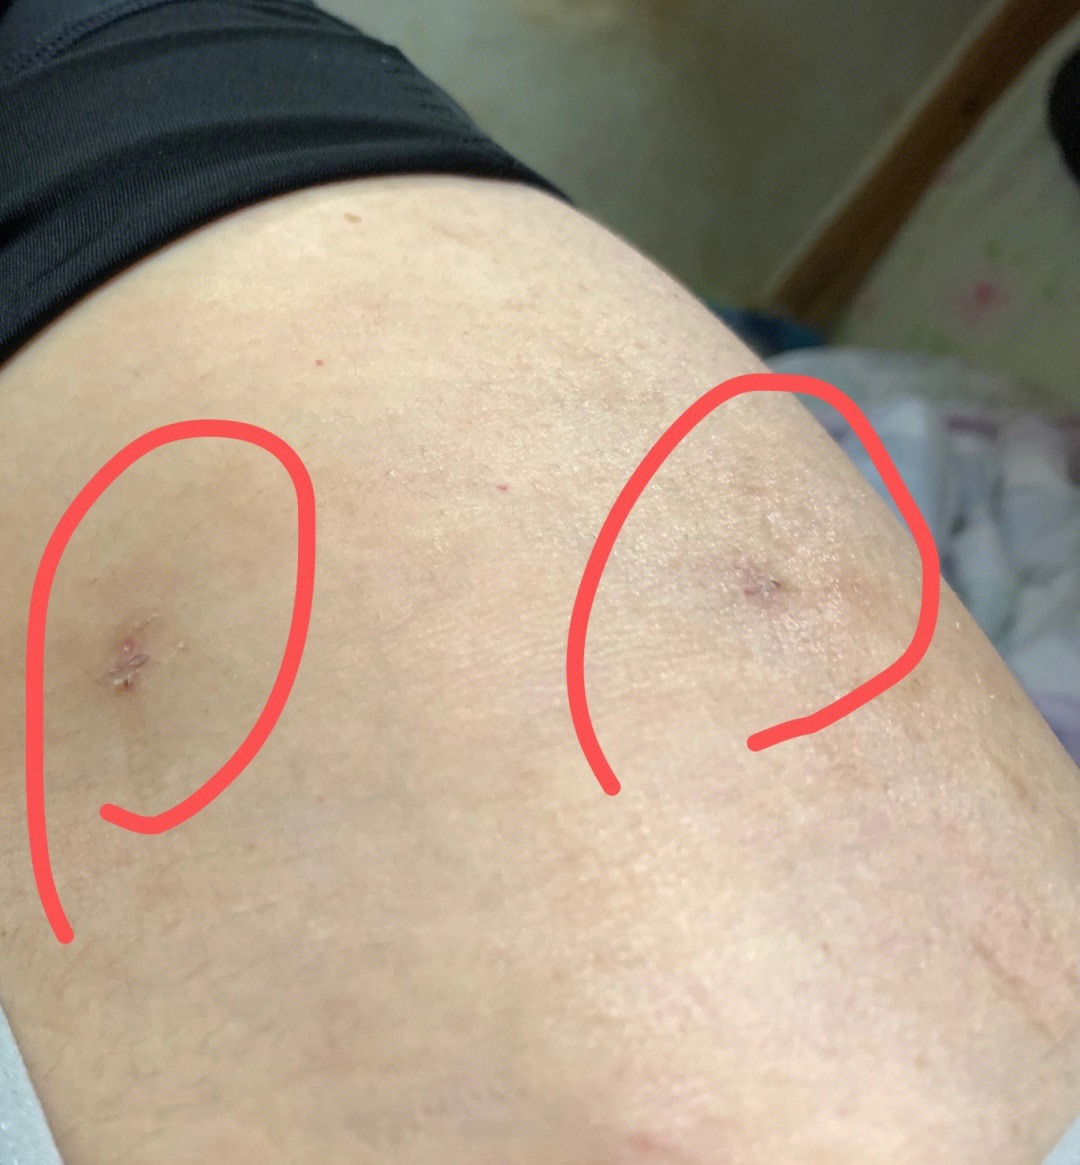 大腿抽脂后的疤痕照片图片